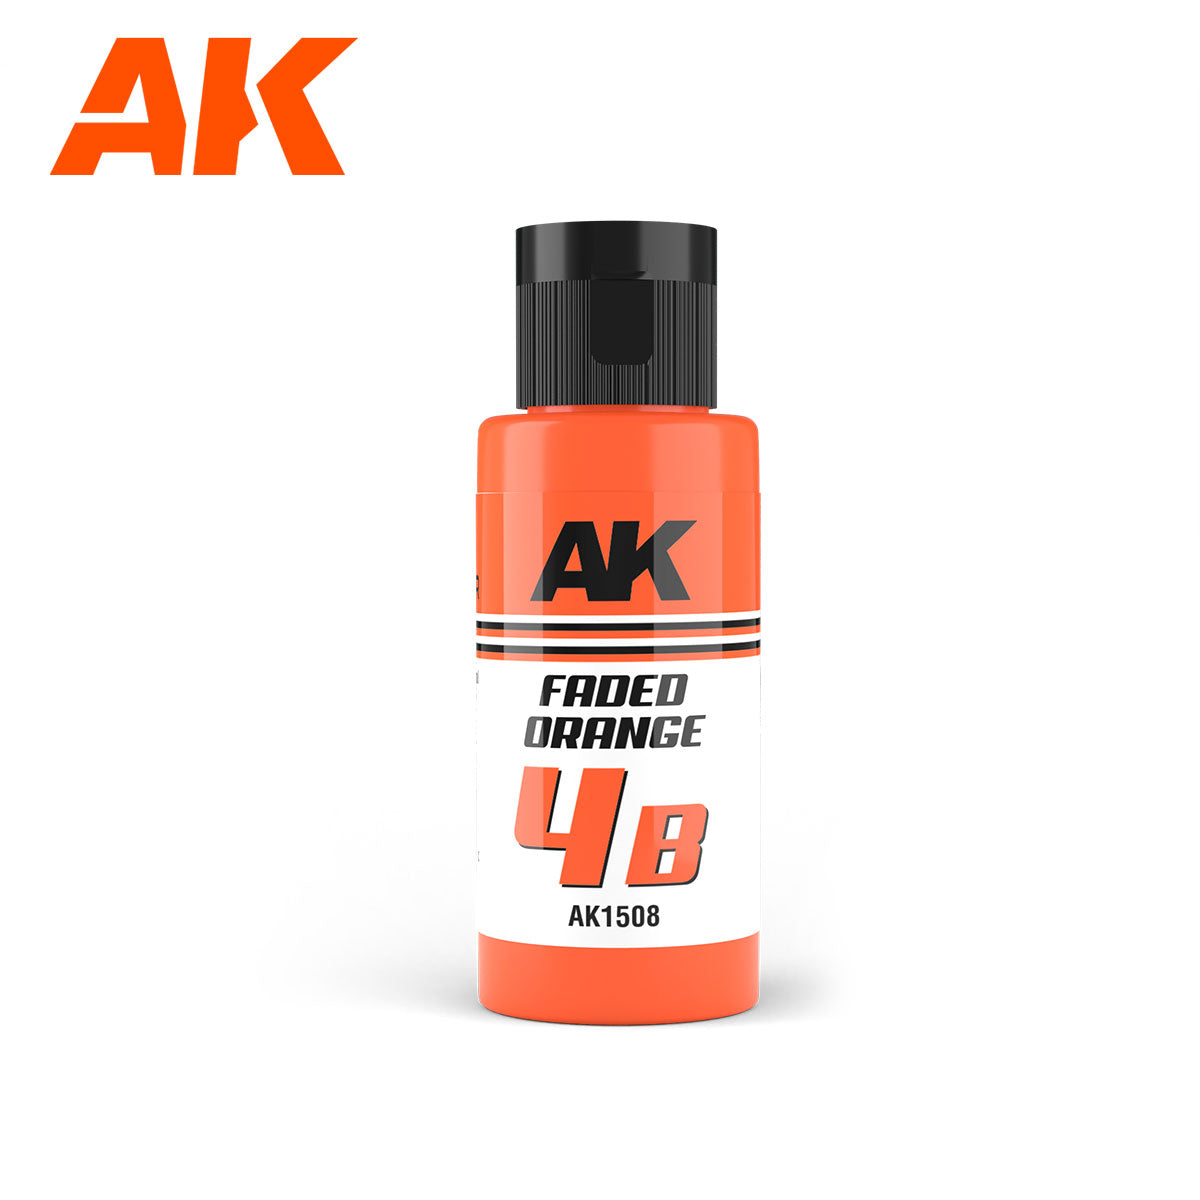 AK Dual Exo: 4B - Faded Orange